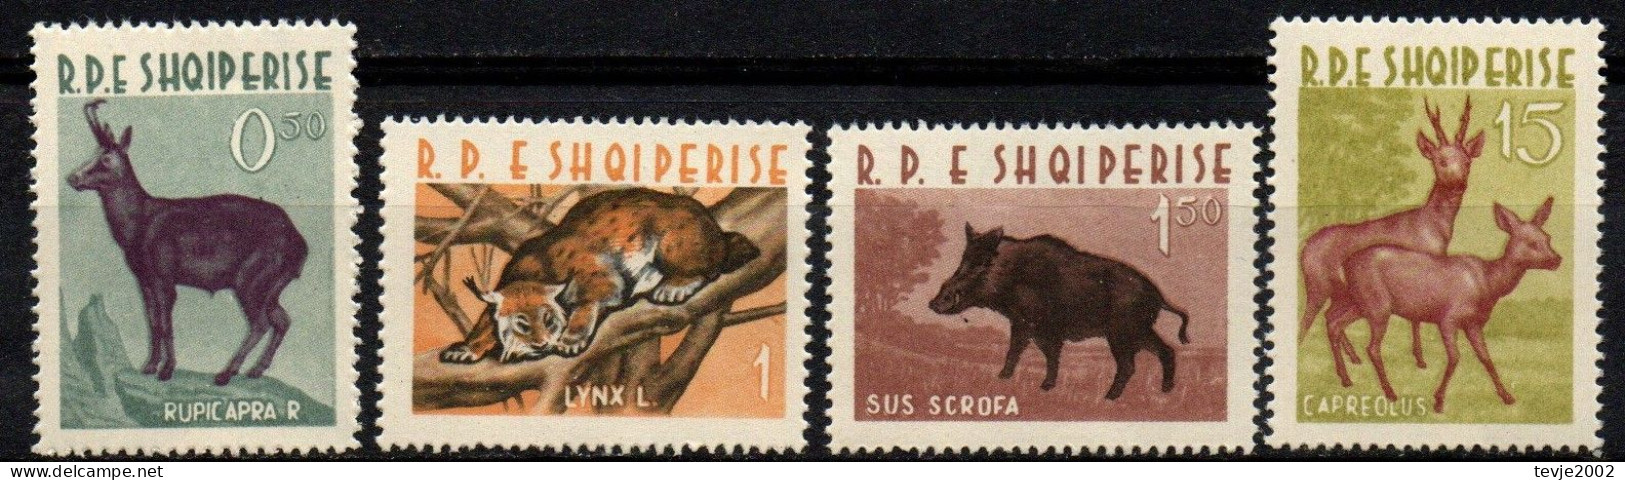 Albanien 1962 - Mi.Nr. 699 - 702 - Postfrisch MNH - Tiere Animals - Gibier